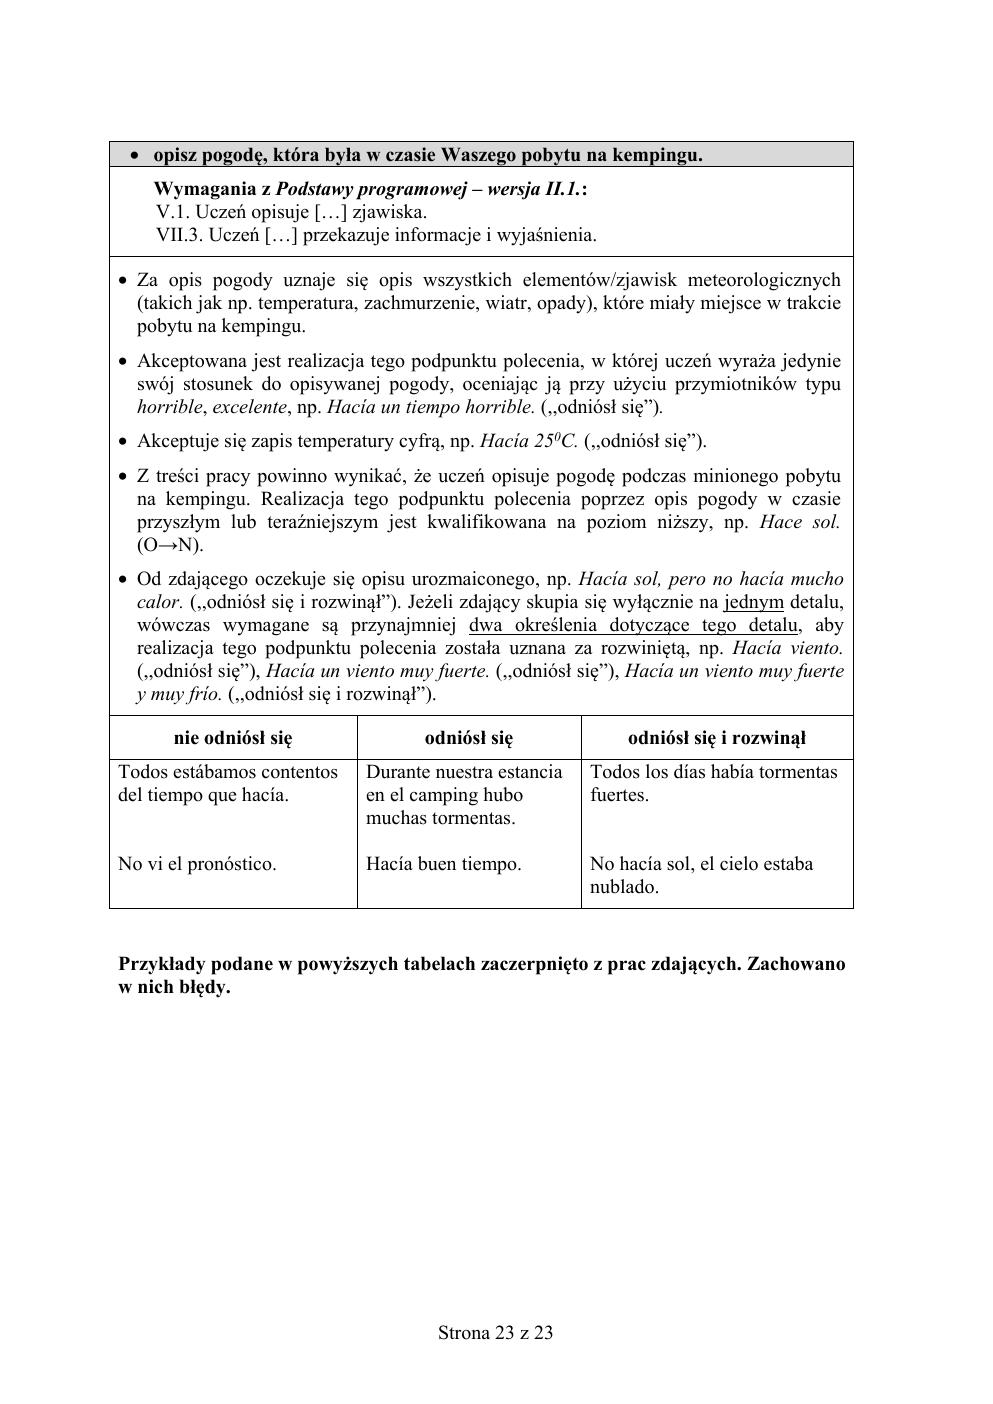 odpowiedzi - hiszpański - egzamin ósmoklasisty 2020 próbny-23